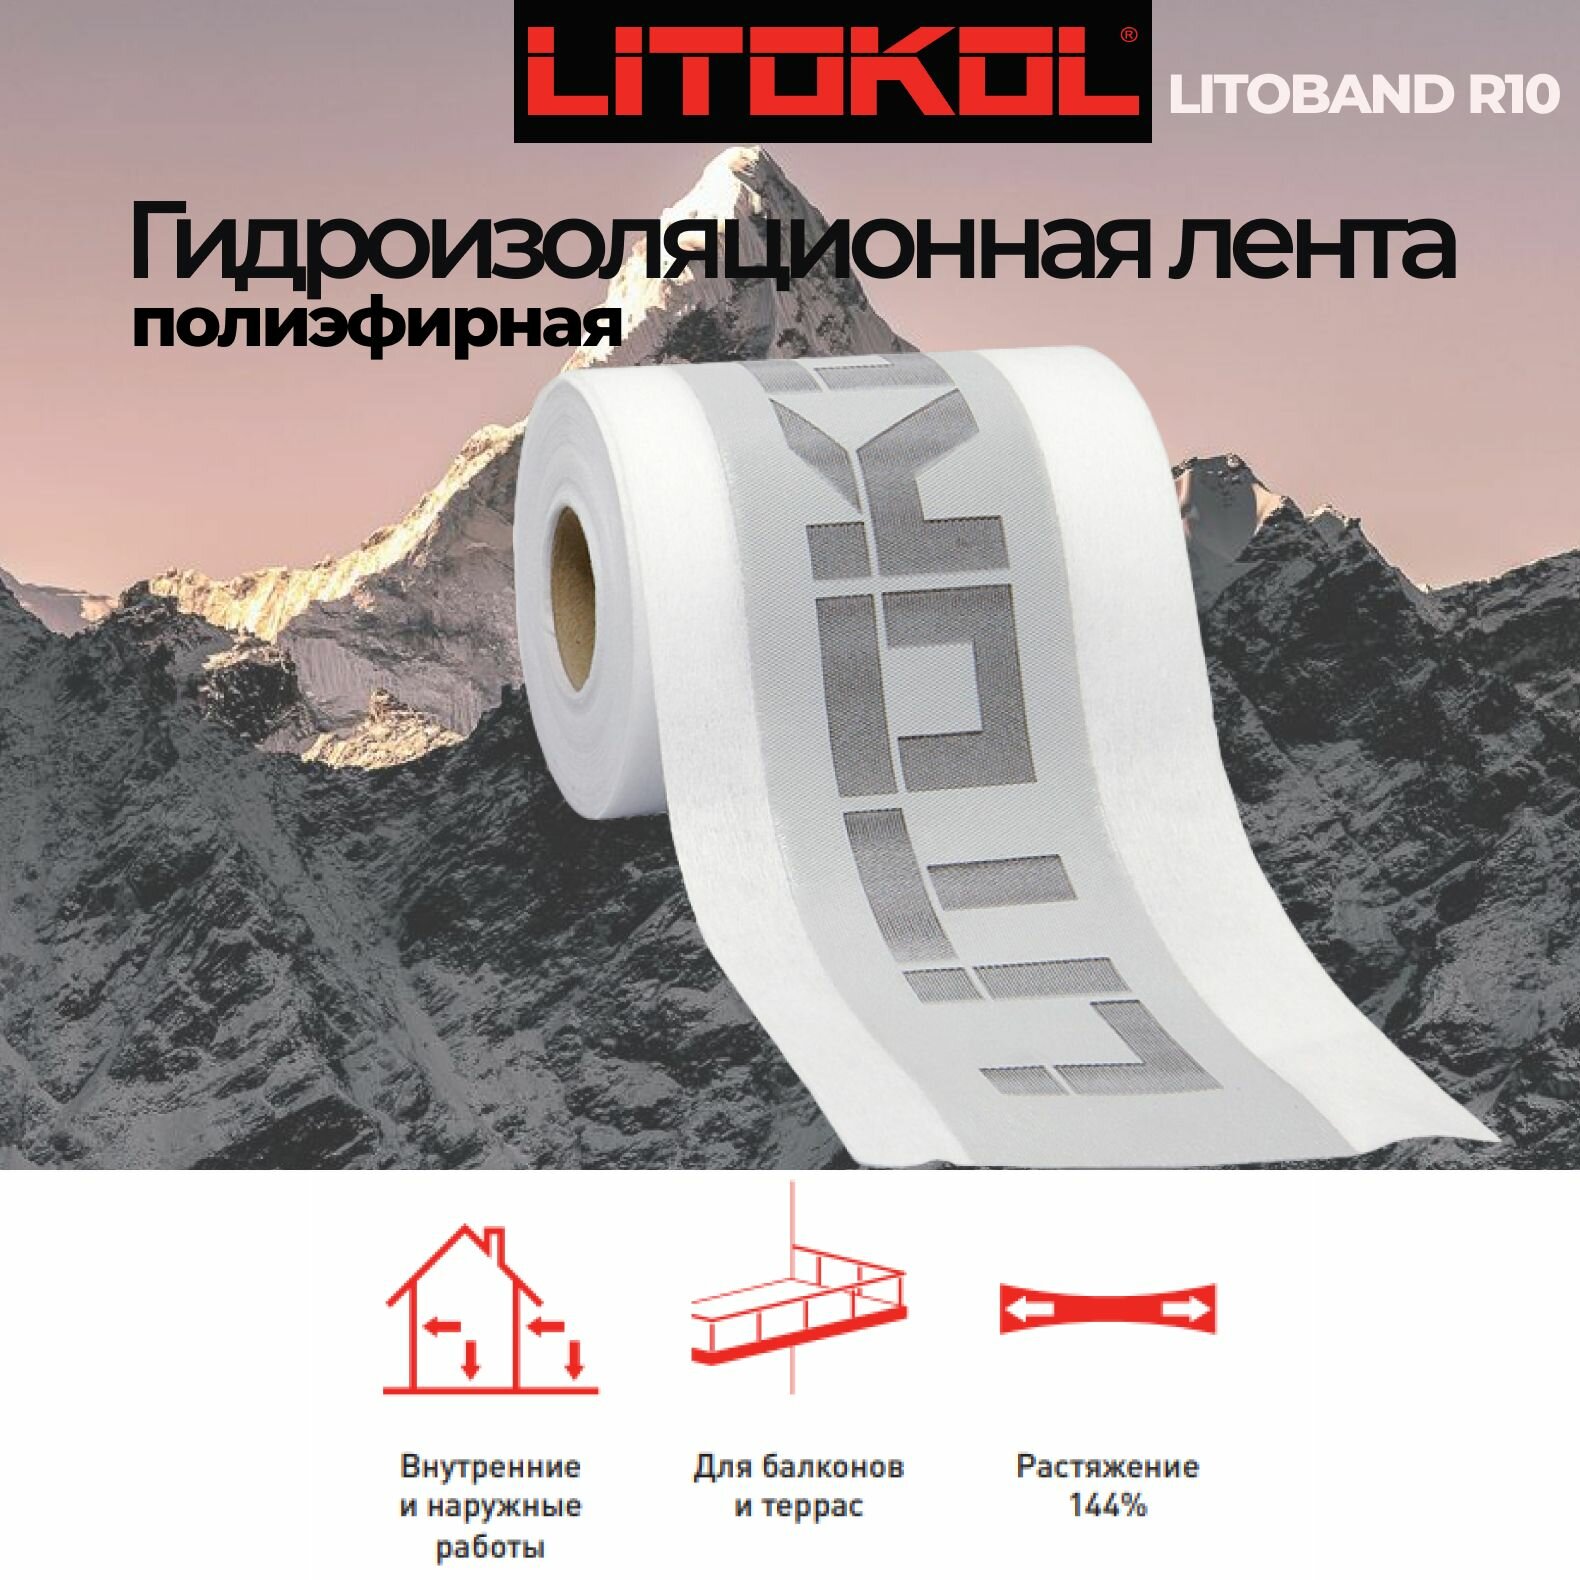 гидроизоляционная лента для угловых примыканий litokol litoband r10, 10 м АО "ЛТК Маркет" - фото №4